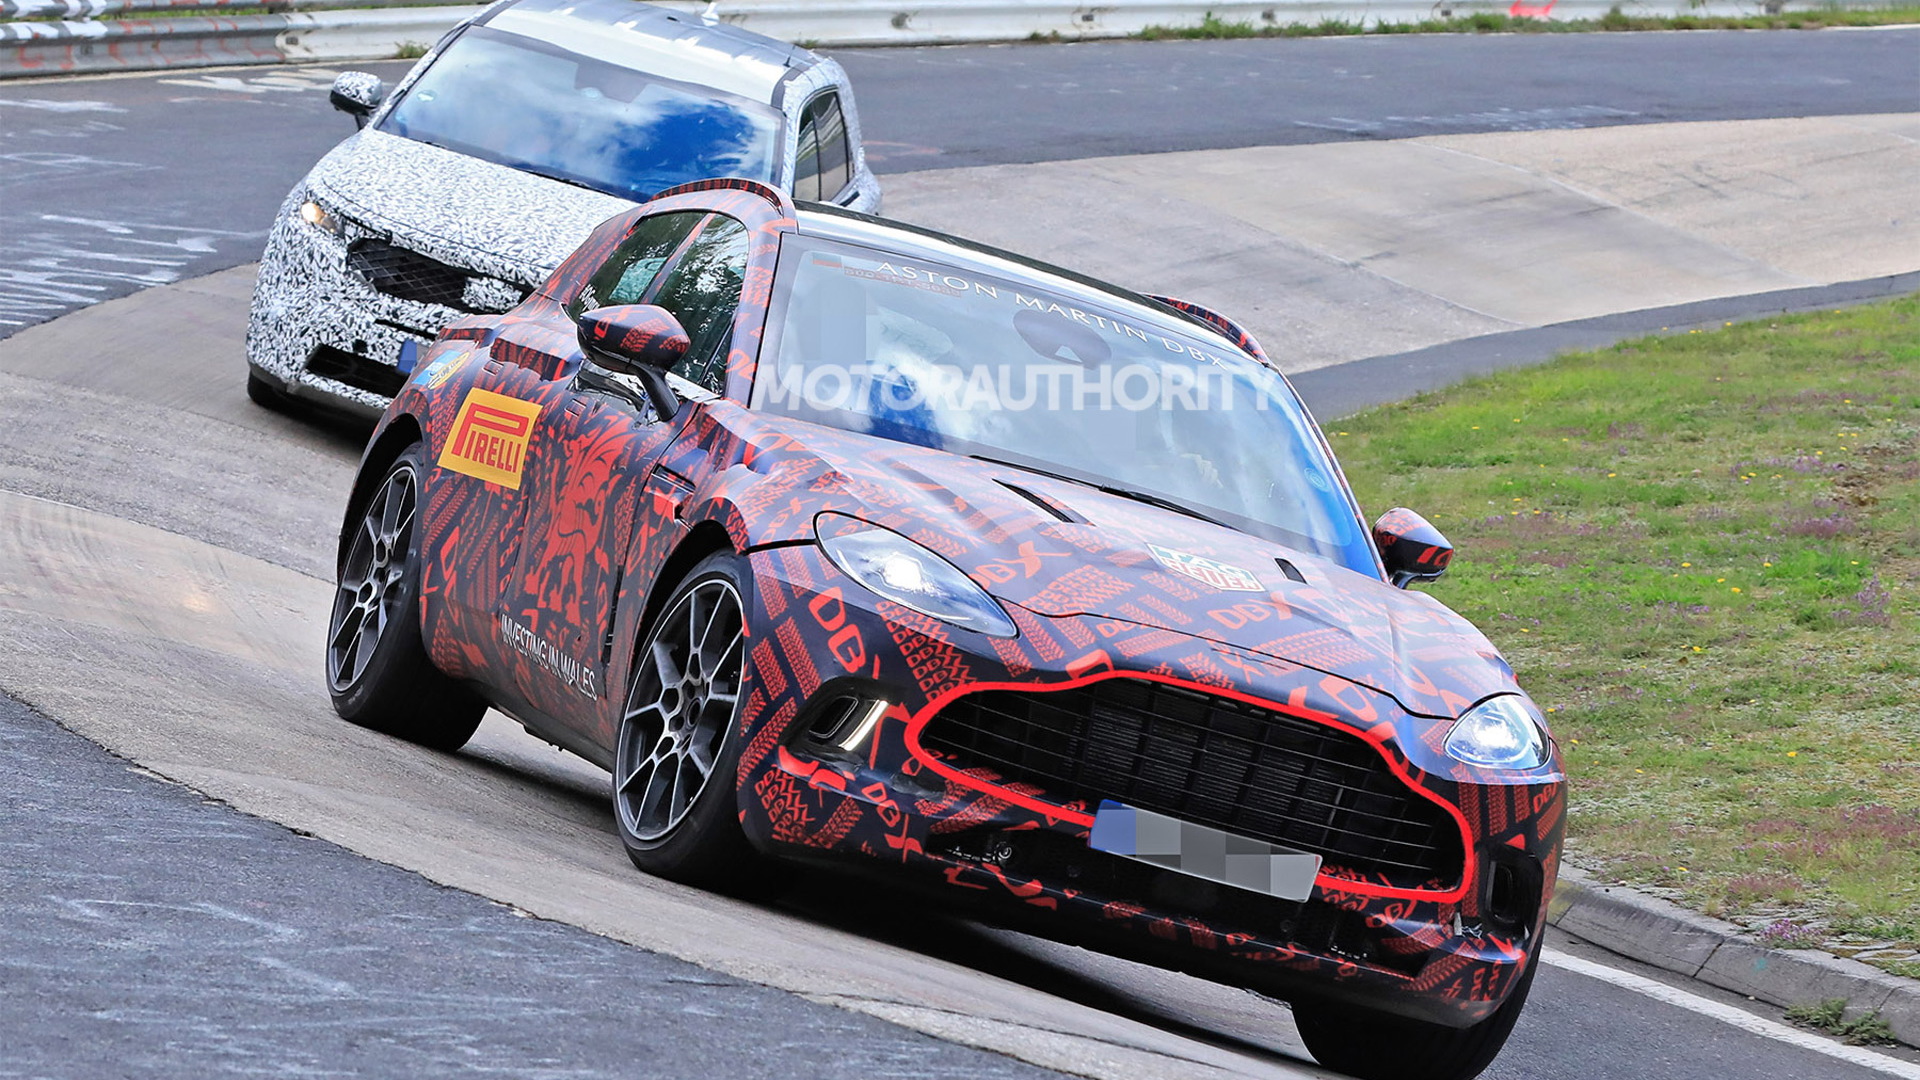 2020 Aston Martin DBX spy shots - Photo credit: S. Baldauf/SB-Medien